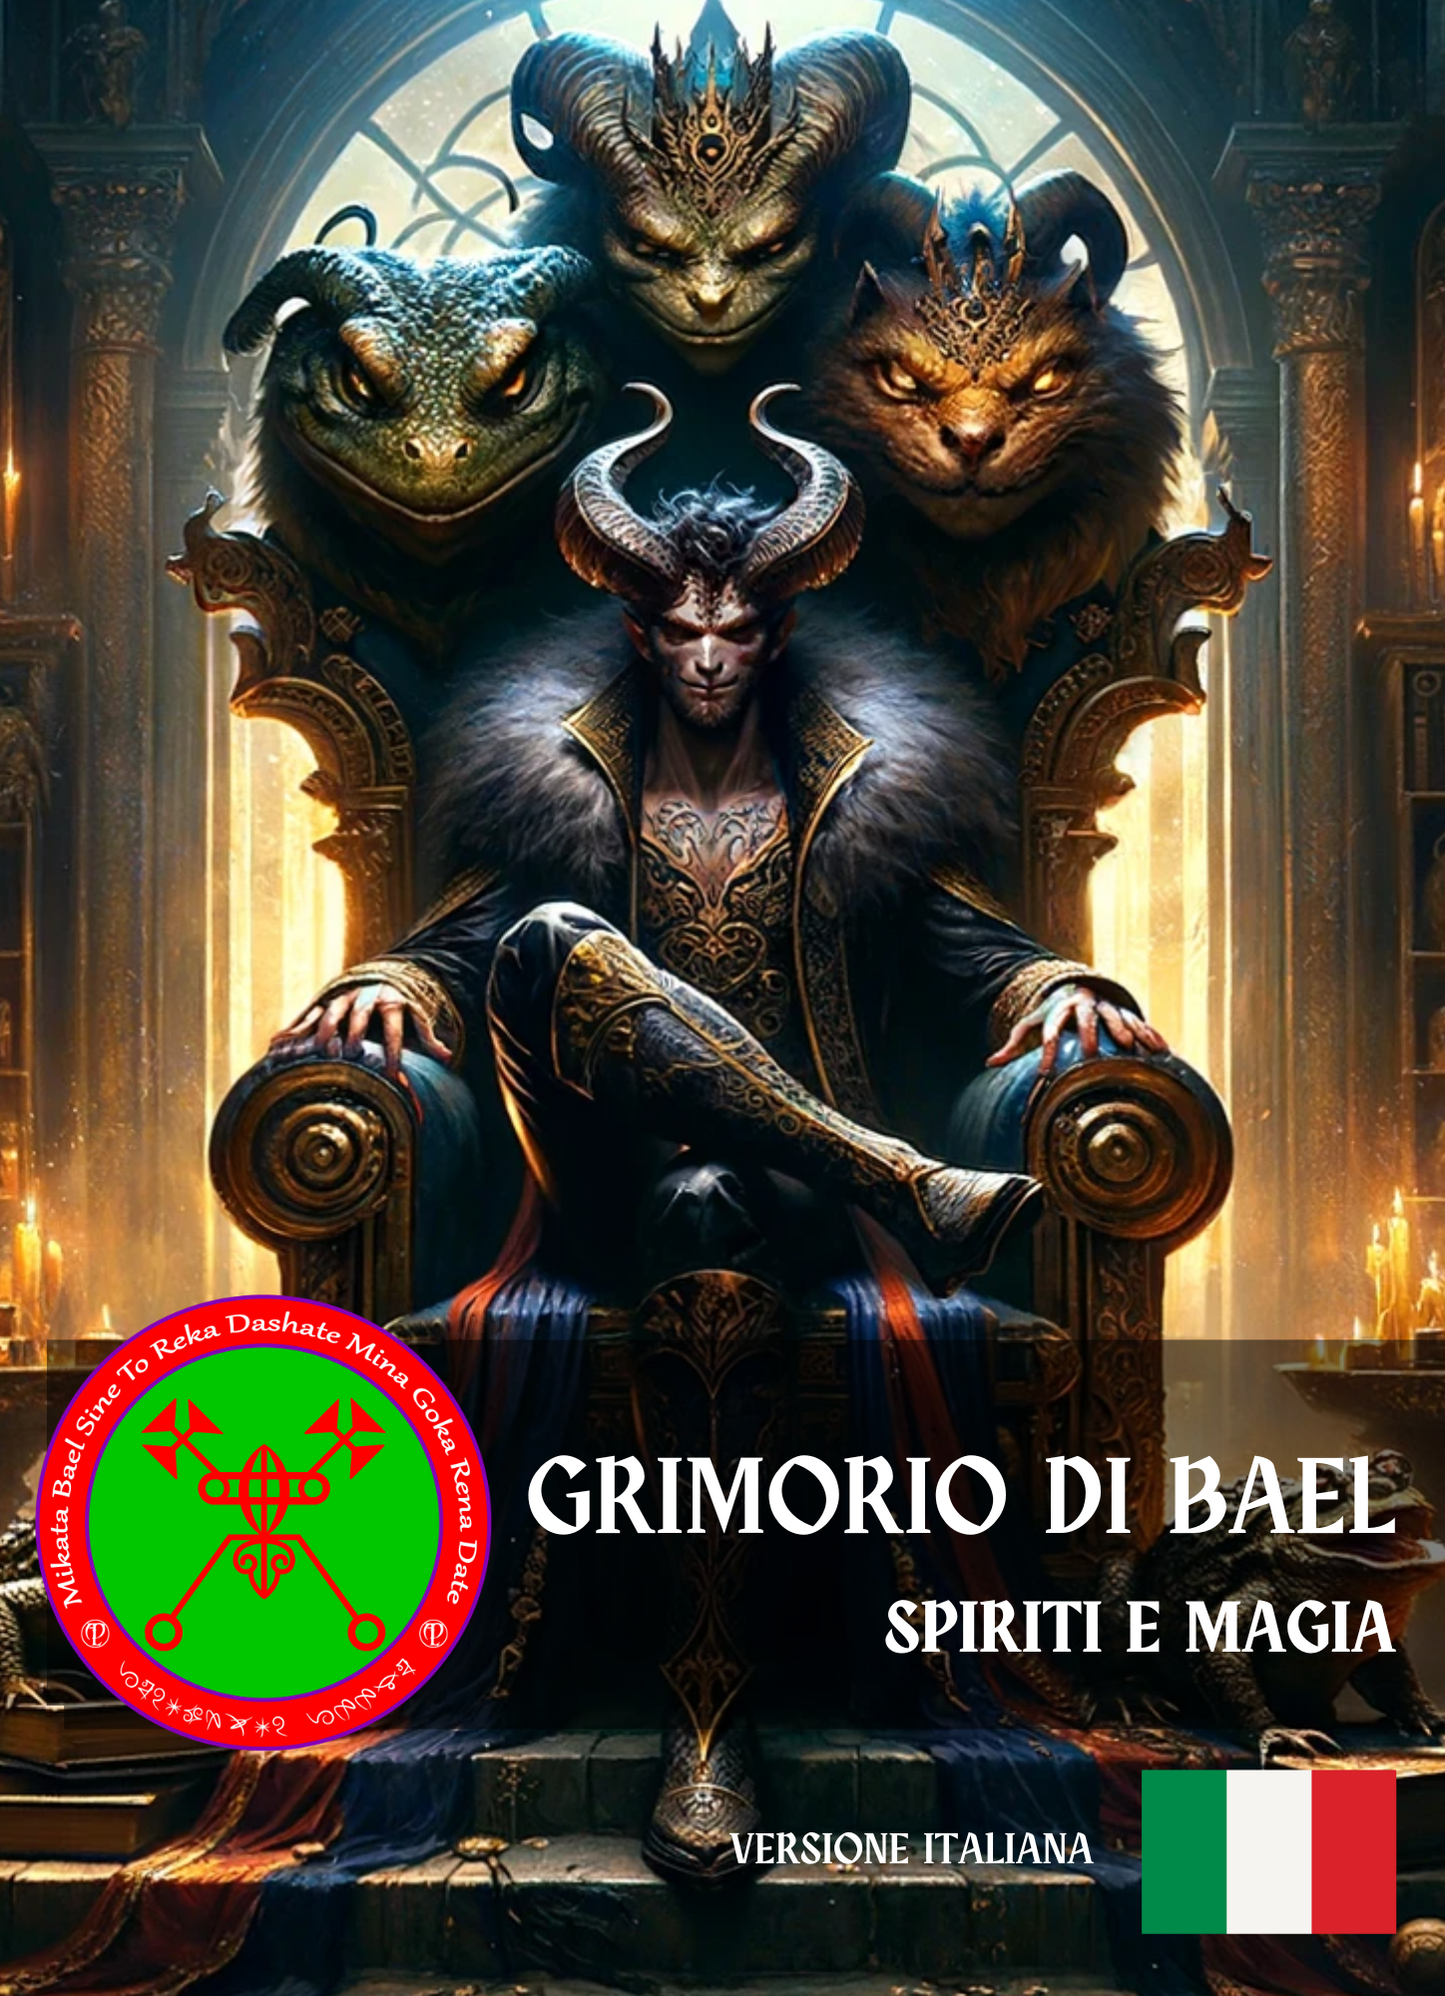 Grimoire of Bael Spells & Rituele vir rykdom verkry deur kreatiwiteit en om jouself te bemagtig - Abraxas Amulets ® Magic ♾️ Talismans ♾️ Inisiasies